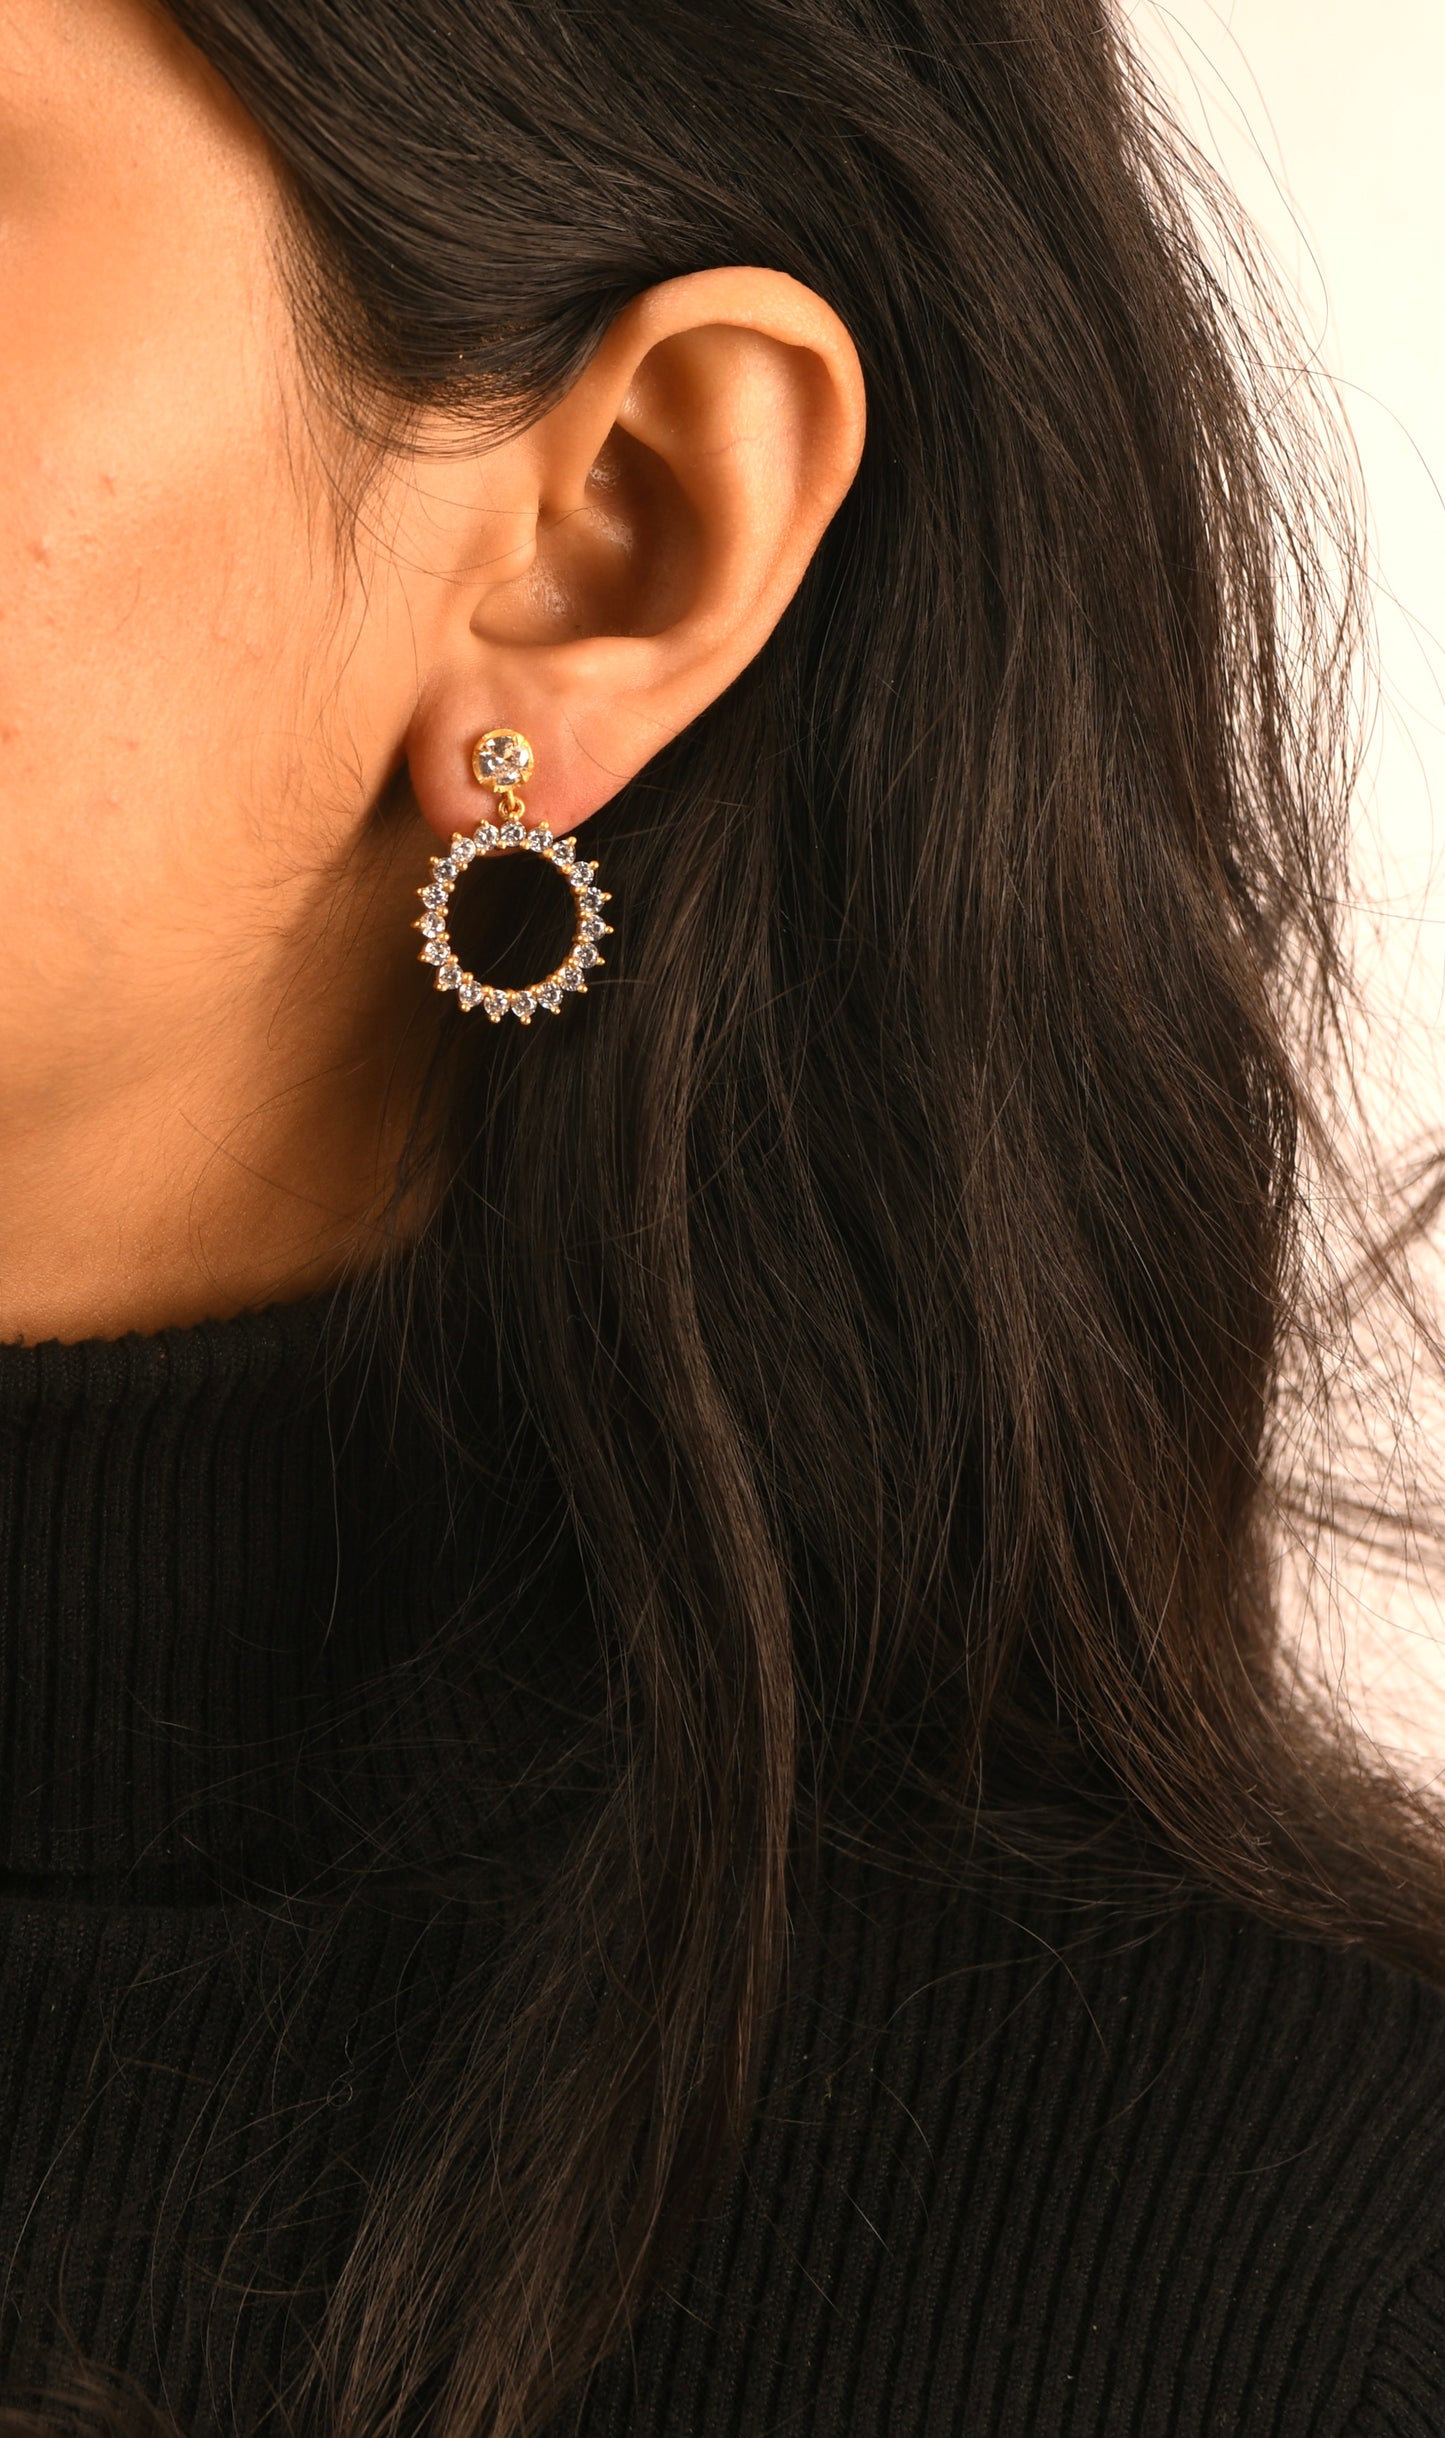 wreath of star earrings